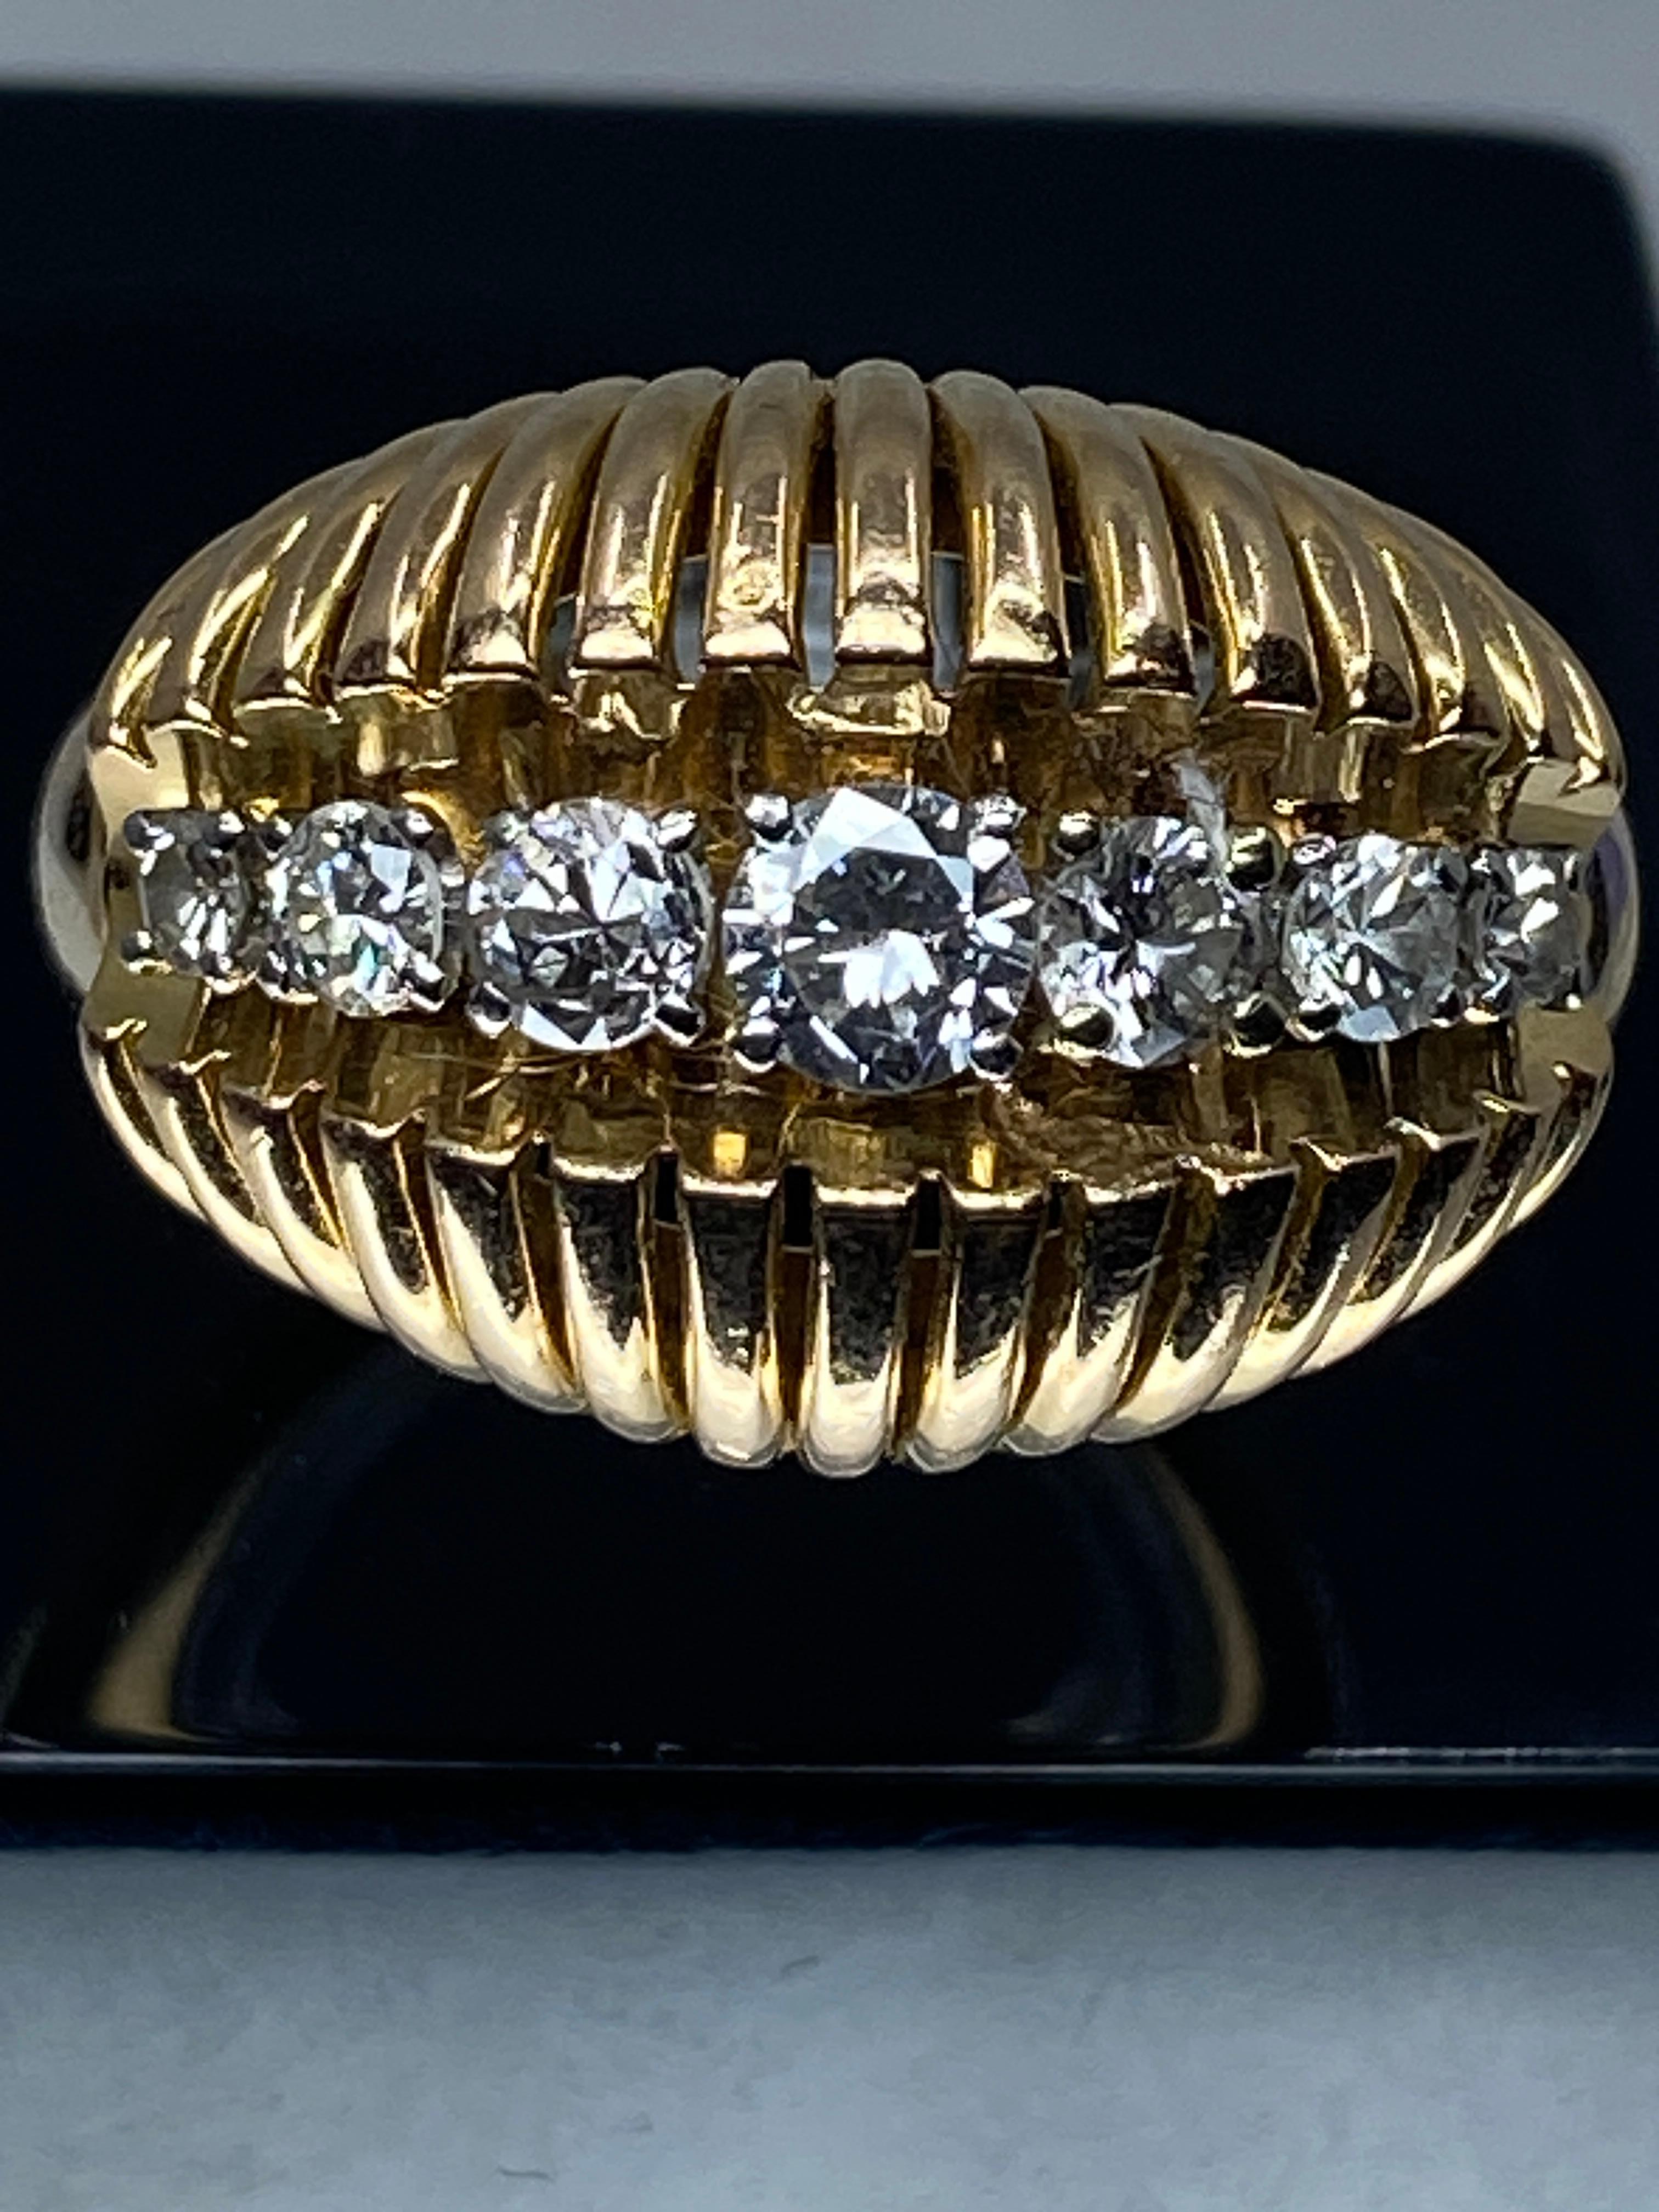 Ravissante bague en or 18 carats de forme jonc bombée, stylisée de fils d’or. Le centre est orné d’une ligne de diamants de taille brillant, poids total des diamants 0.60/0.70 carat environ. Chacun est serti par 4 griffes en platine. Le charme de